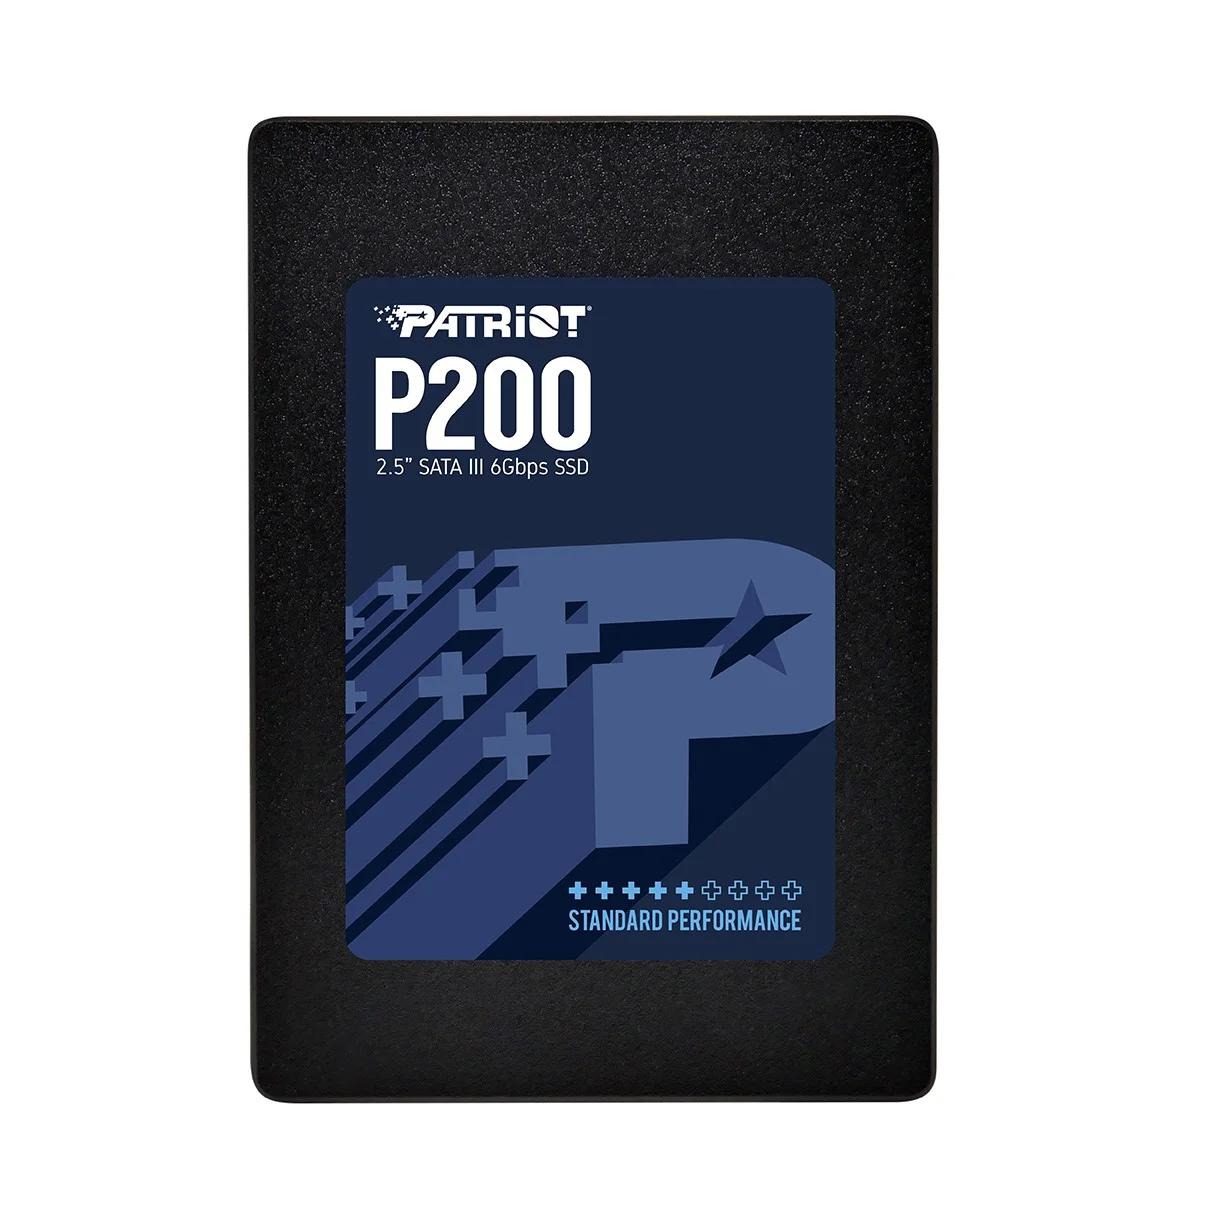 PATRIOT анонсировала выпуск новых SSD P200 - фото 3